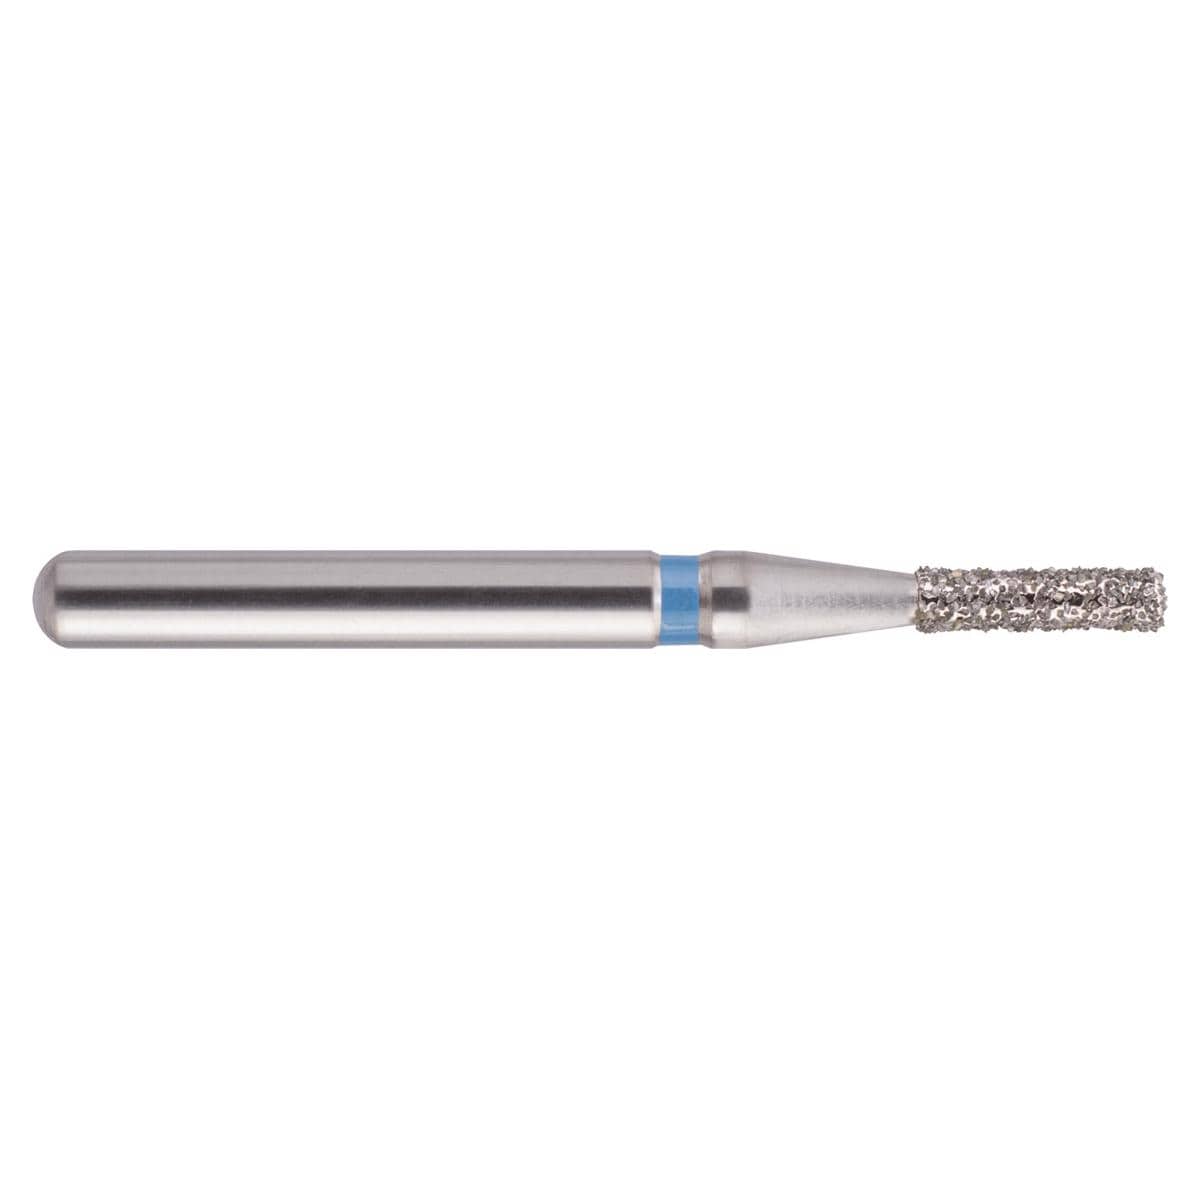 NeoDiamond FG, Form 109, Zylinder flach - ISO 008, mittel (blau), Packung 10 Stück